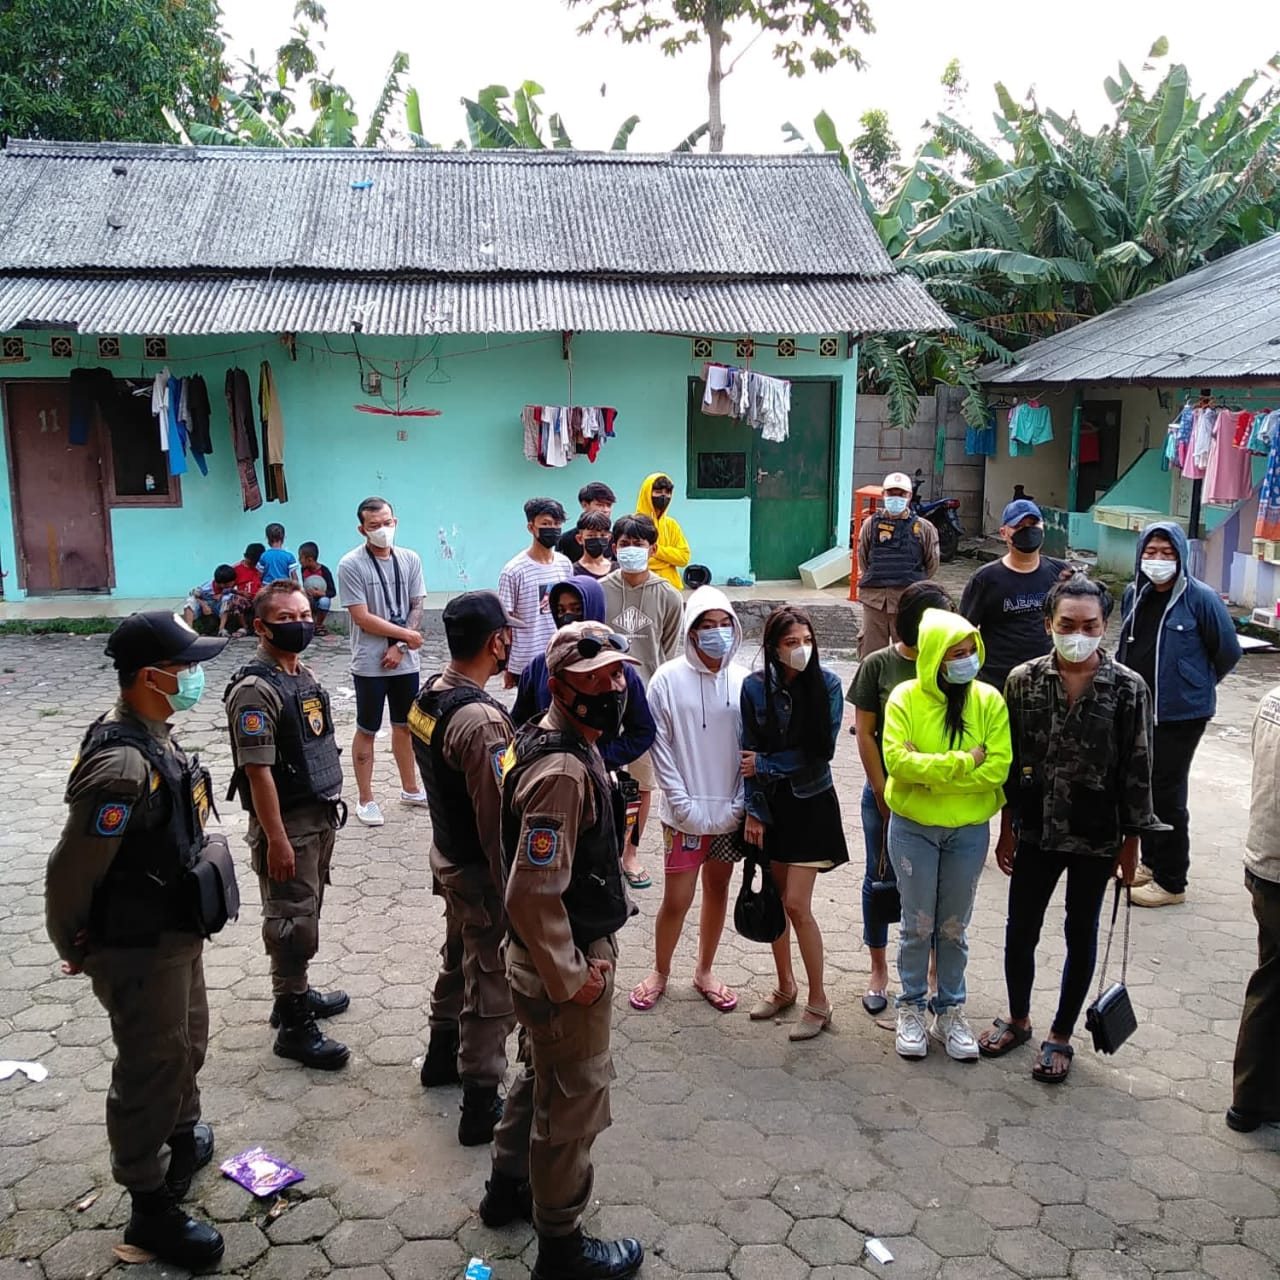 Satuan Polisi Pamong Praja (Satpol PP) Kota Tangerang Selatan kembali menggencarkan razia di sejumlah tempat penginapan harian, indekos di salah satu wilayah Tangerang Selatan.